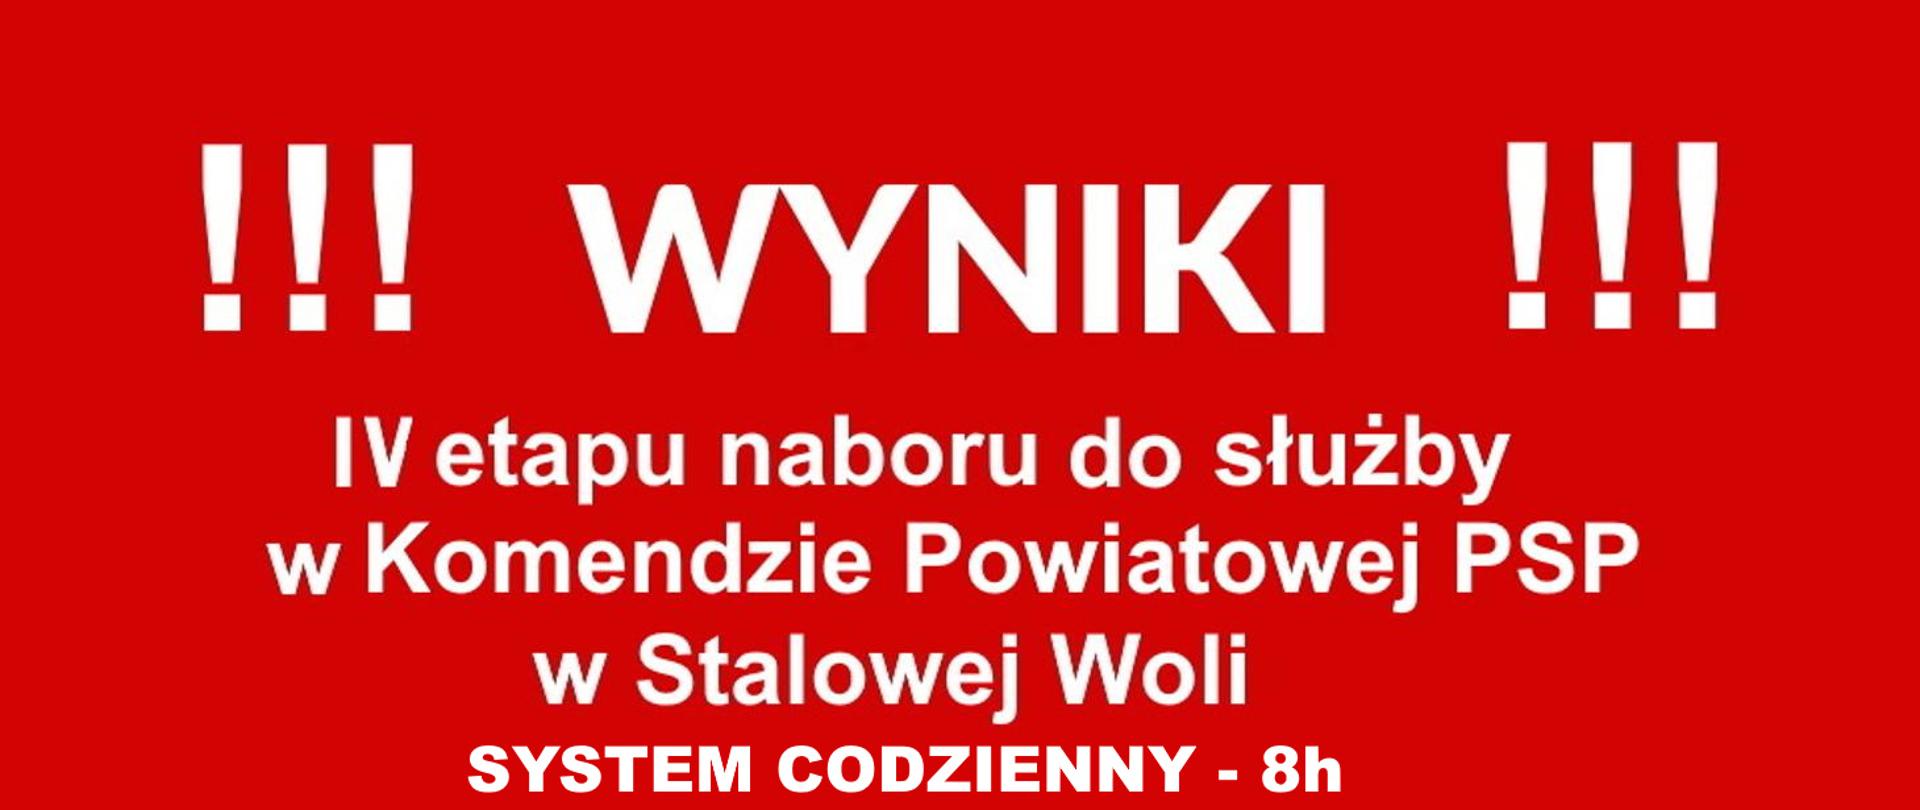 Wyniki IV etapu naboru do służby w KP PSP w Stalowej Woli 